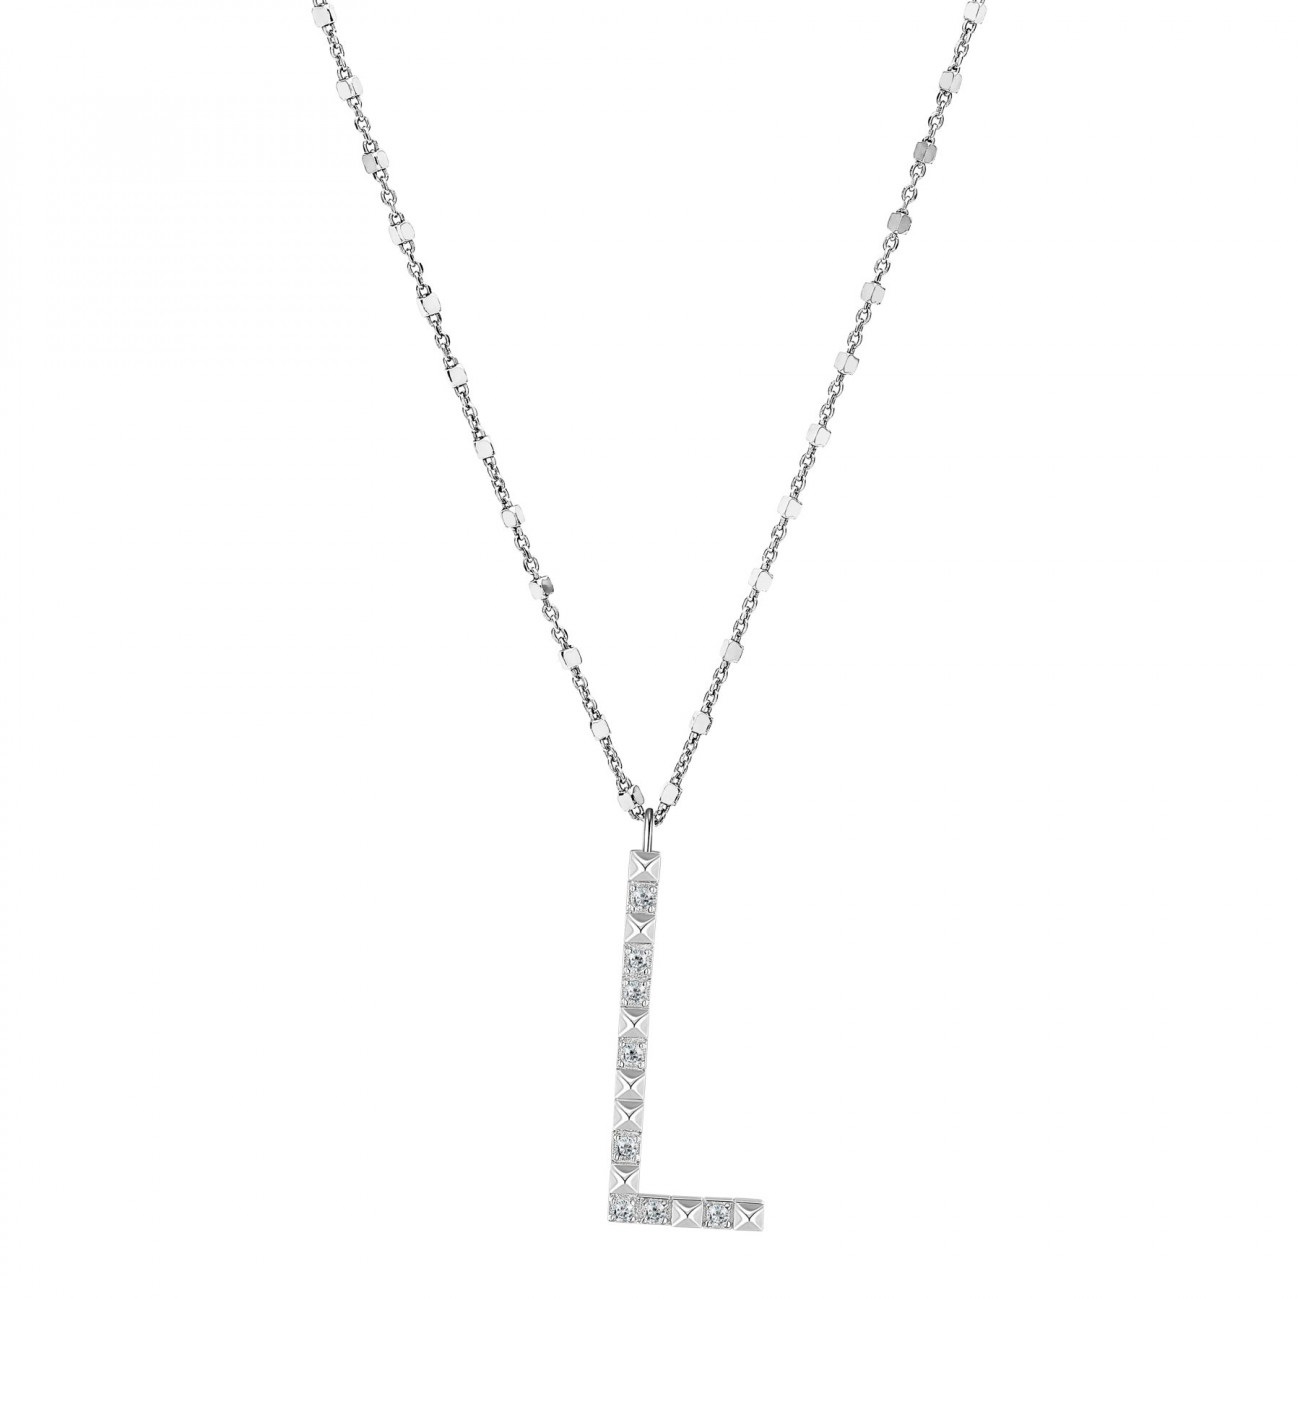 Rosato Stříbrný náhrdelník s přívěskem L Cubica RZCU12 (řetízek, přívěsek)